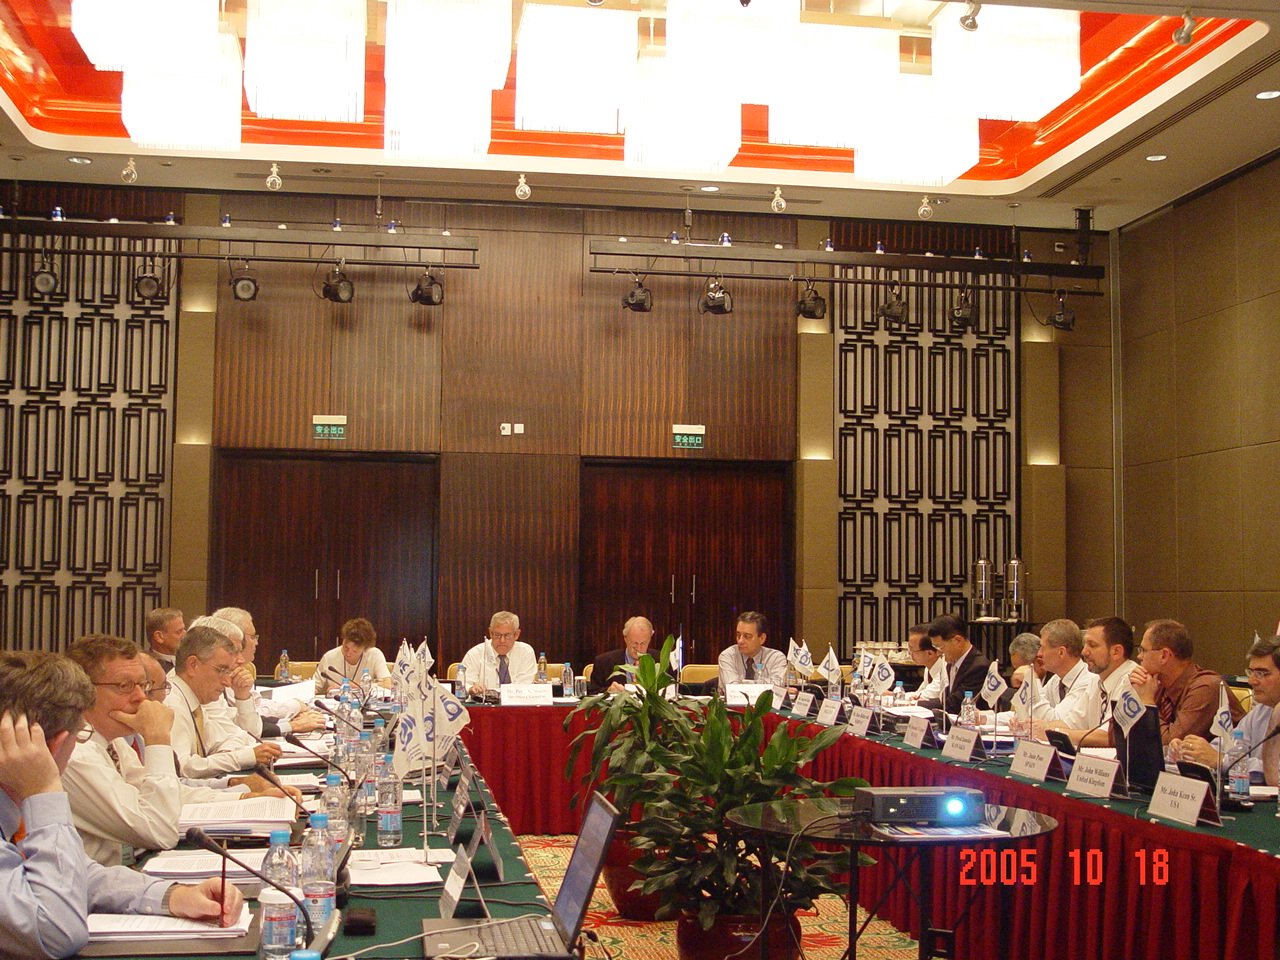 Image: IGU Exectutive Committee meeting